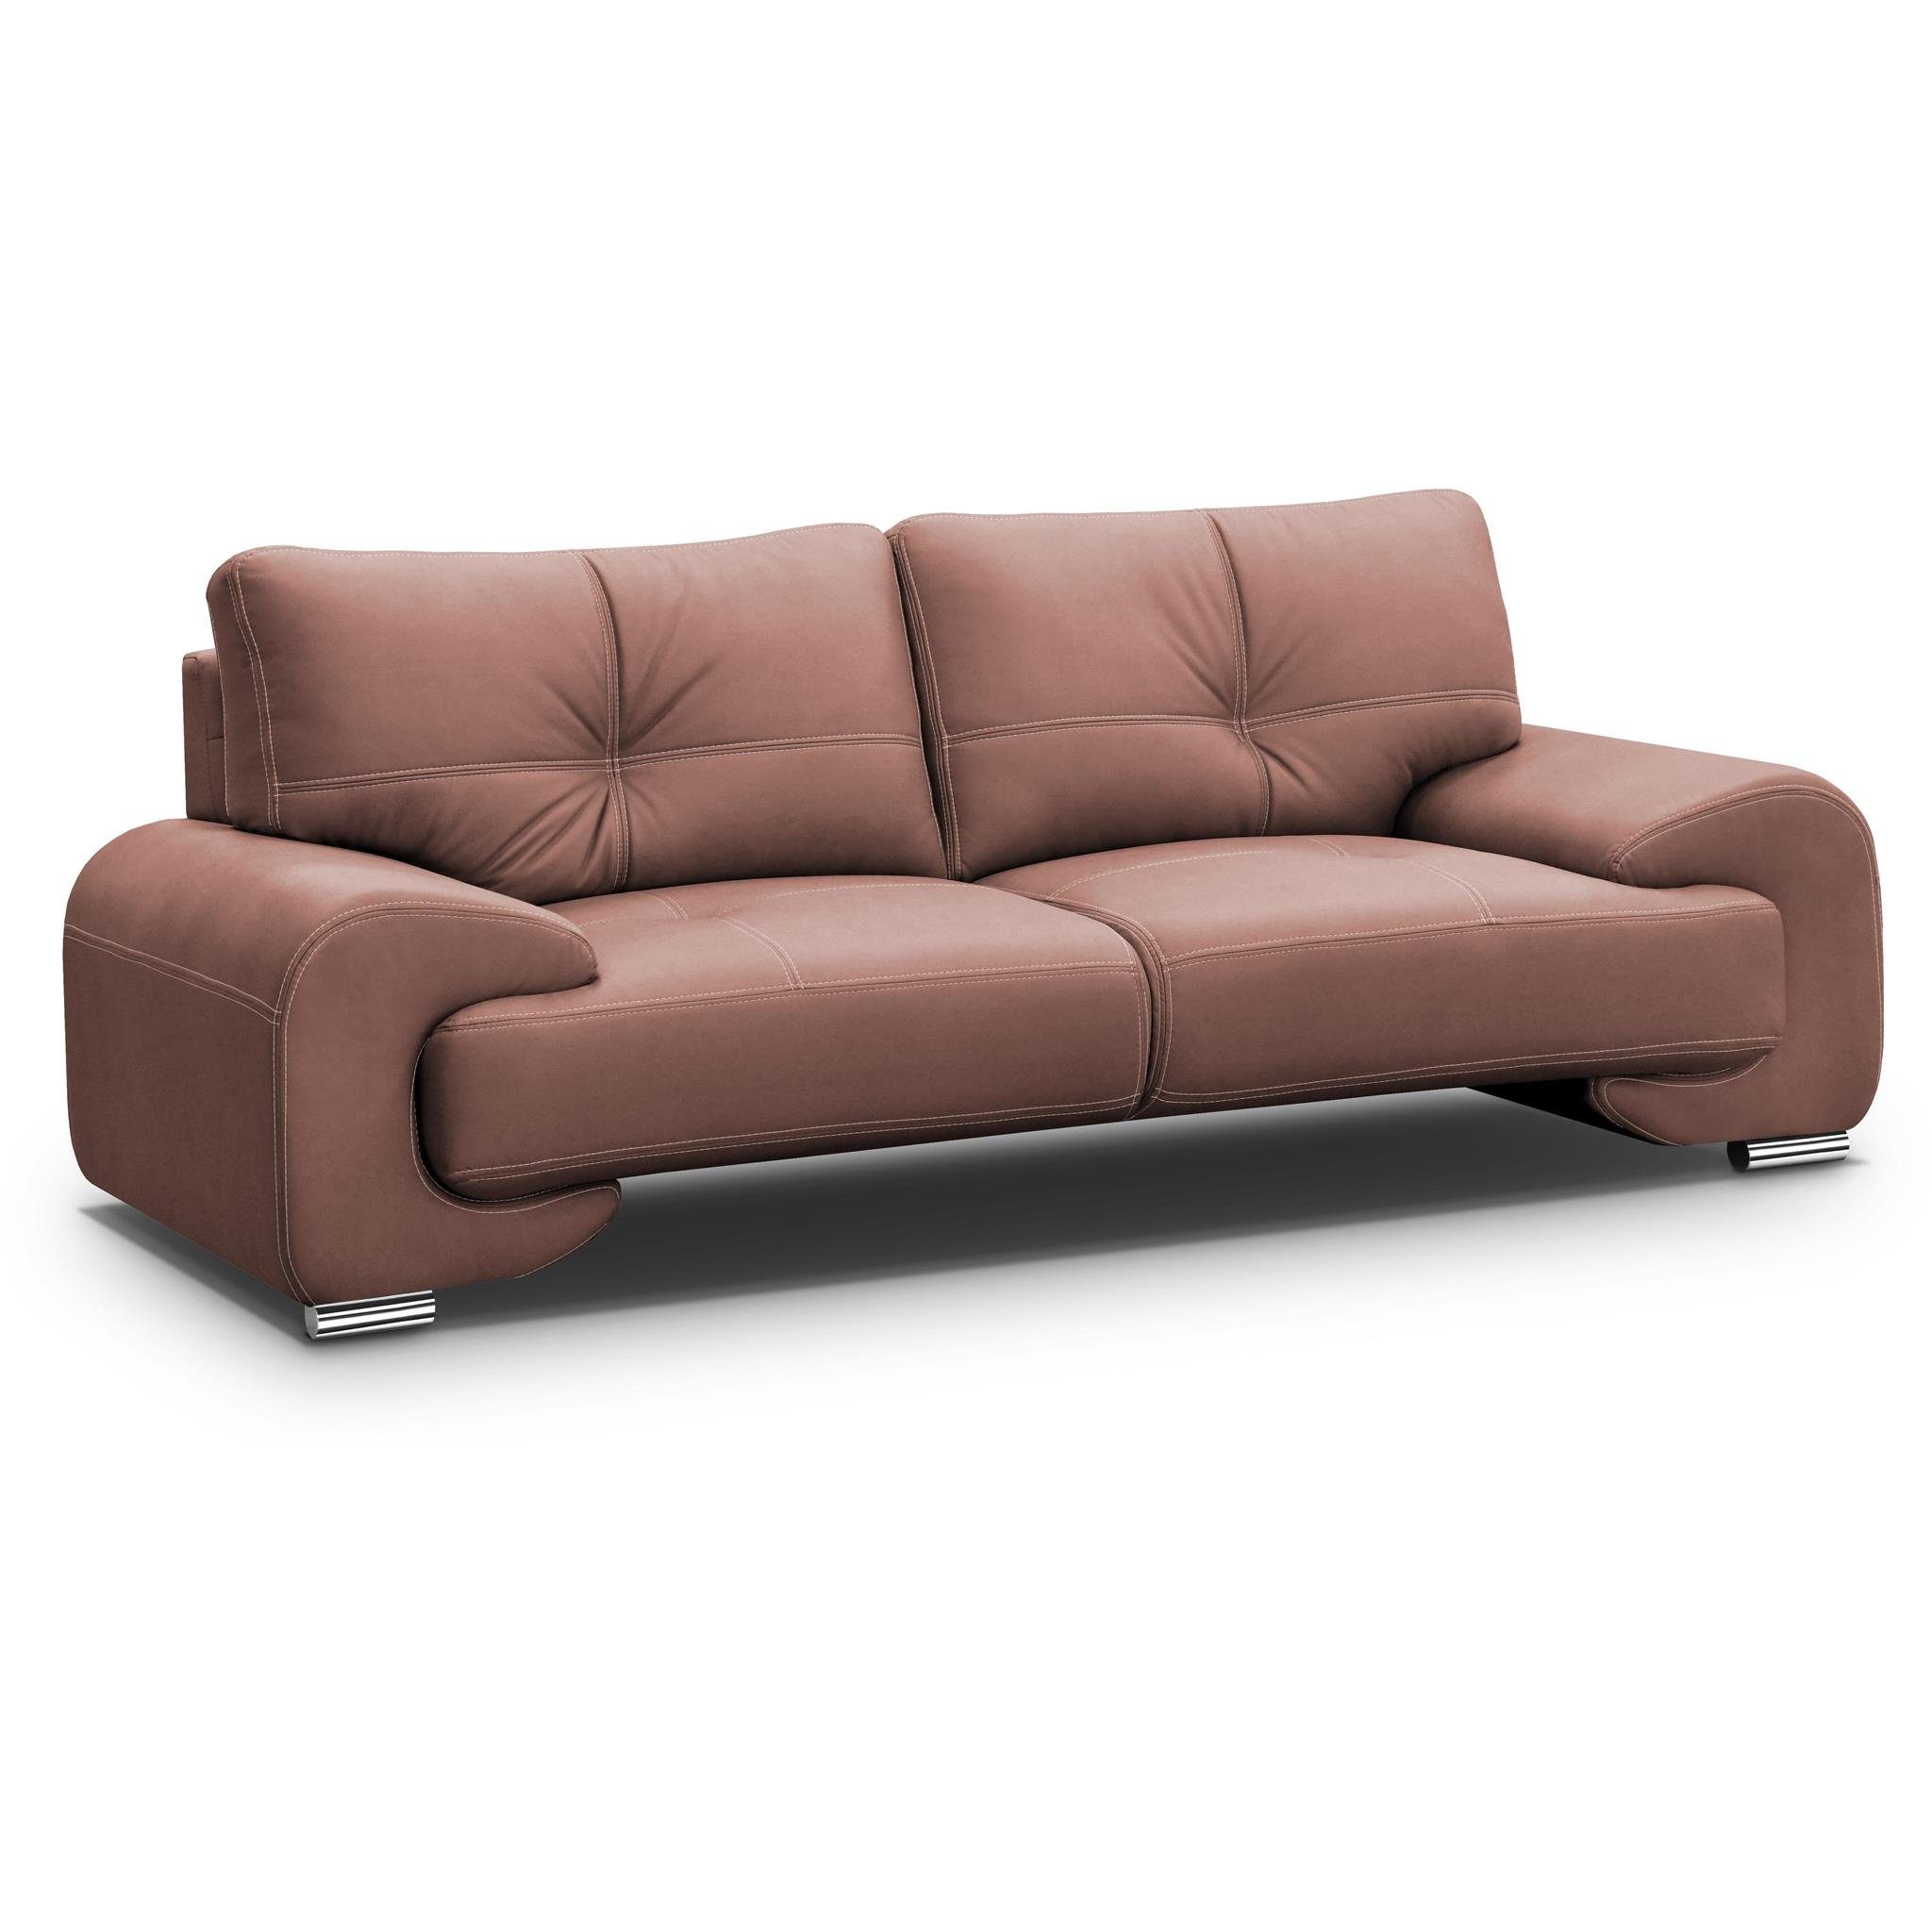 Beautysofa 3-Sitzer Maxime lux, 3-Sitzer Sofa im modernes Design, mit Wellenunterfederung, mit dekorativen Nähten, Kunstleder, Dreisitzer Ginger (vega 56) | Einzelsofas